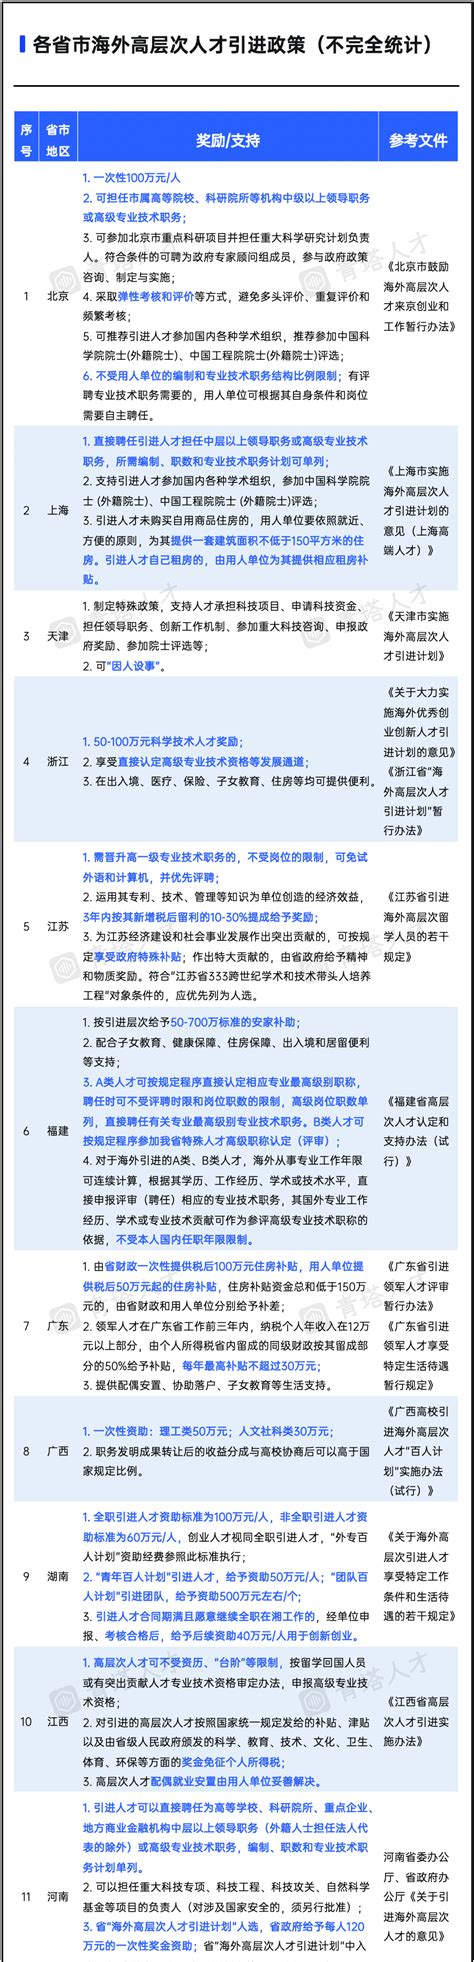 2021年中国31省市人才政策对比及效益评价深度分析报告 报告摘要：一、中国人才政策基本情况1.1 人才政策分类1.1.1人才政策分类人才政策 ...